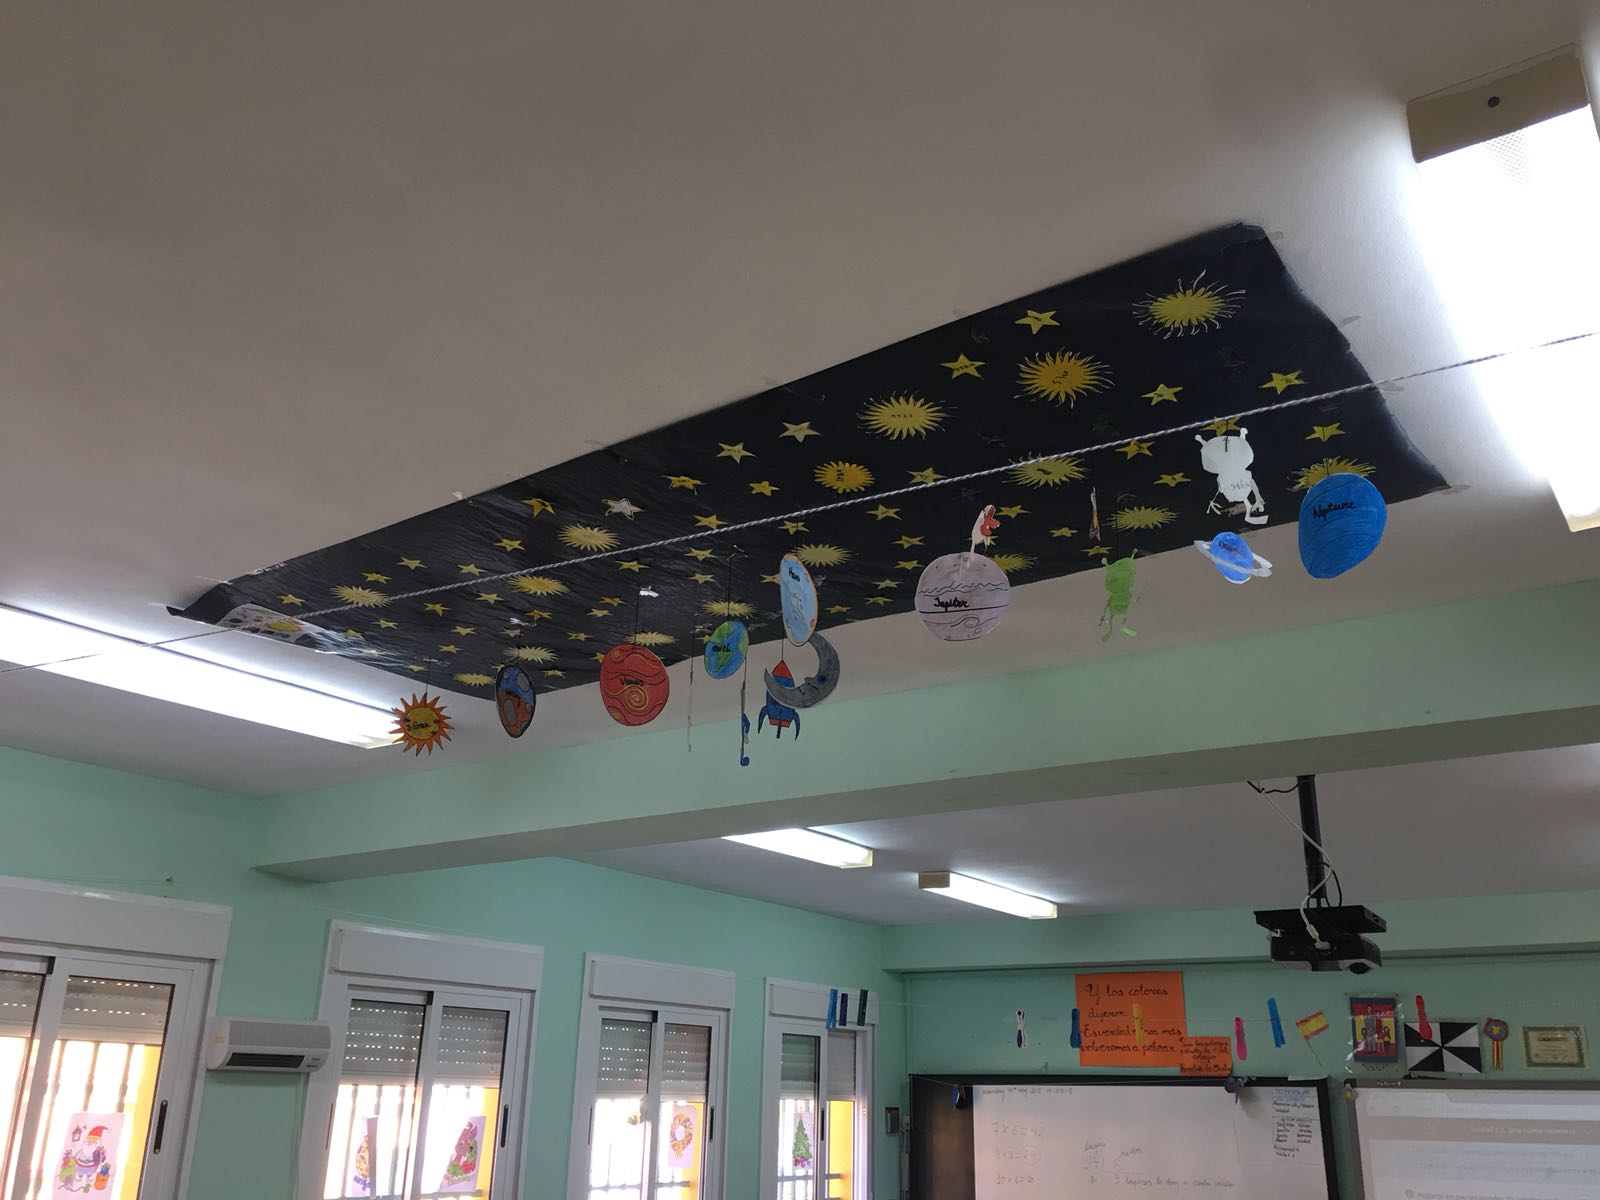 Los alumnos y alumnas de segundo de educación primaria trabajan con el programa bilingüe. Se imparten ciencia en inglés, han realizado un mural de nuestro sistema solar para trabajar los nombres de los planetas y del resto de elementos del sistema solar.